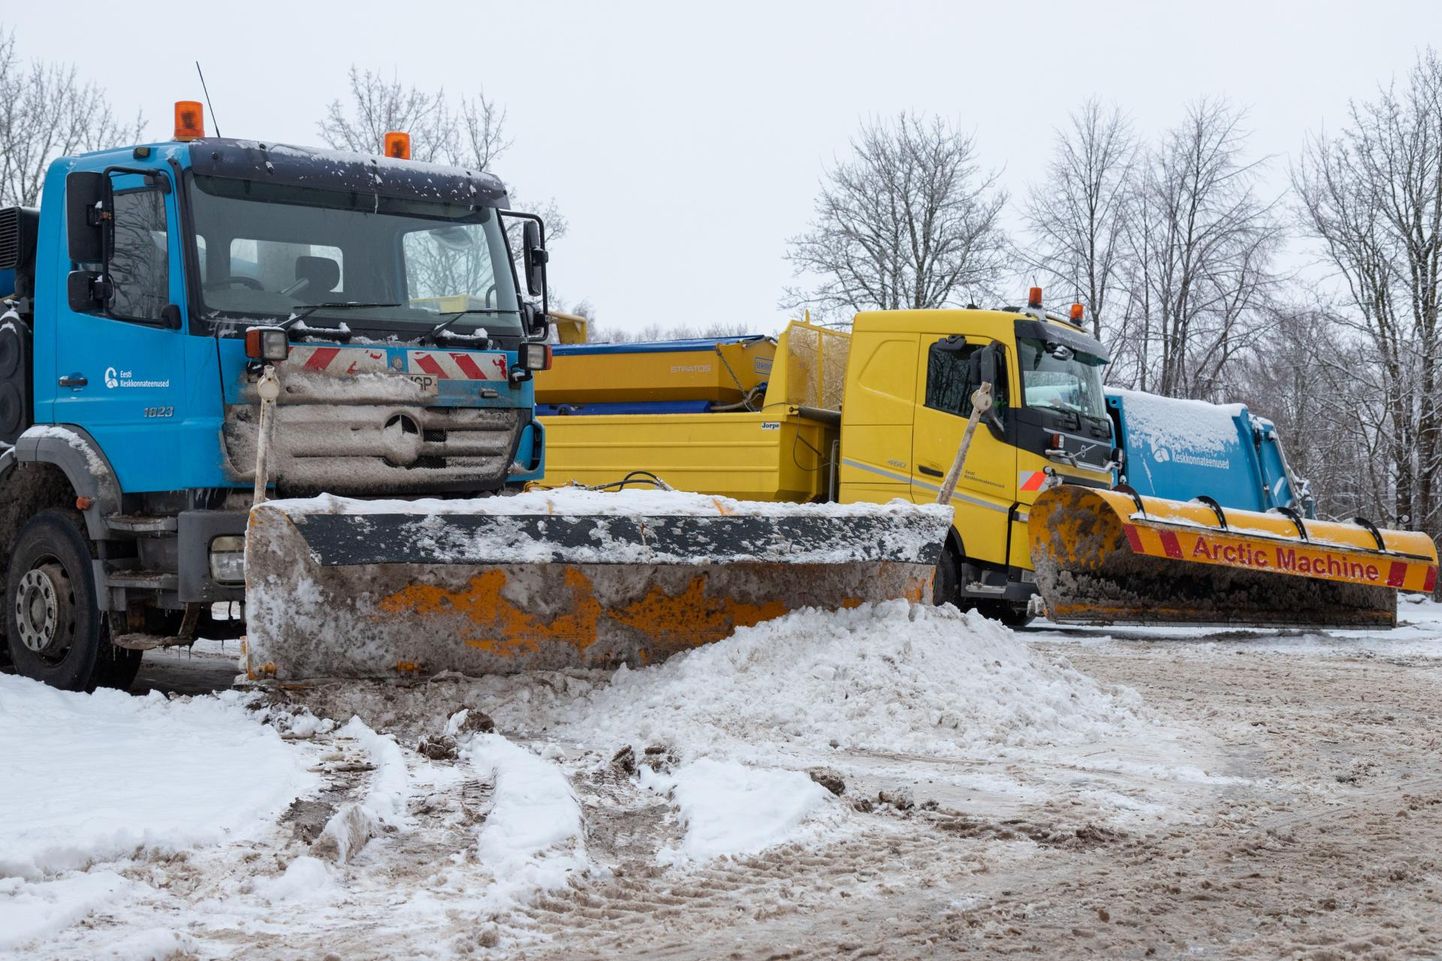 Linnatänavatelt lume koristamise eest vastutab Eesti Keskkonnateenused ning pargi- ja linnale kuuluvad kõnniteed puhastab Viljandi Linnahooldus. Erakinnistuid peavad puhastama kinnistuomanikud ise.